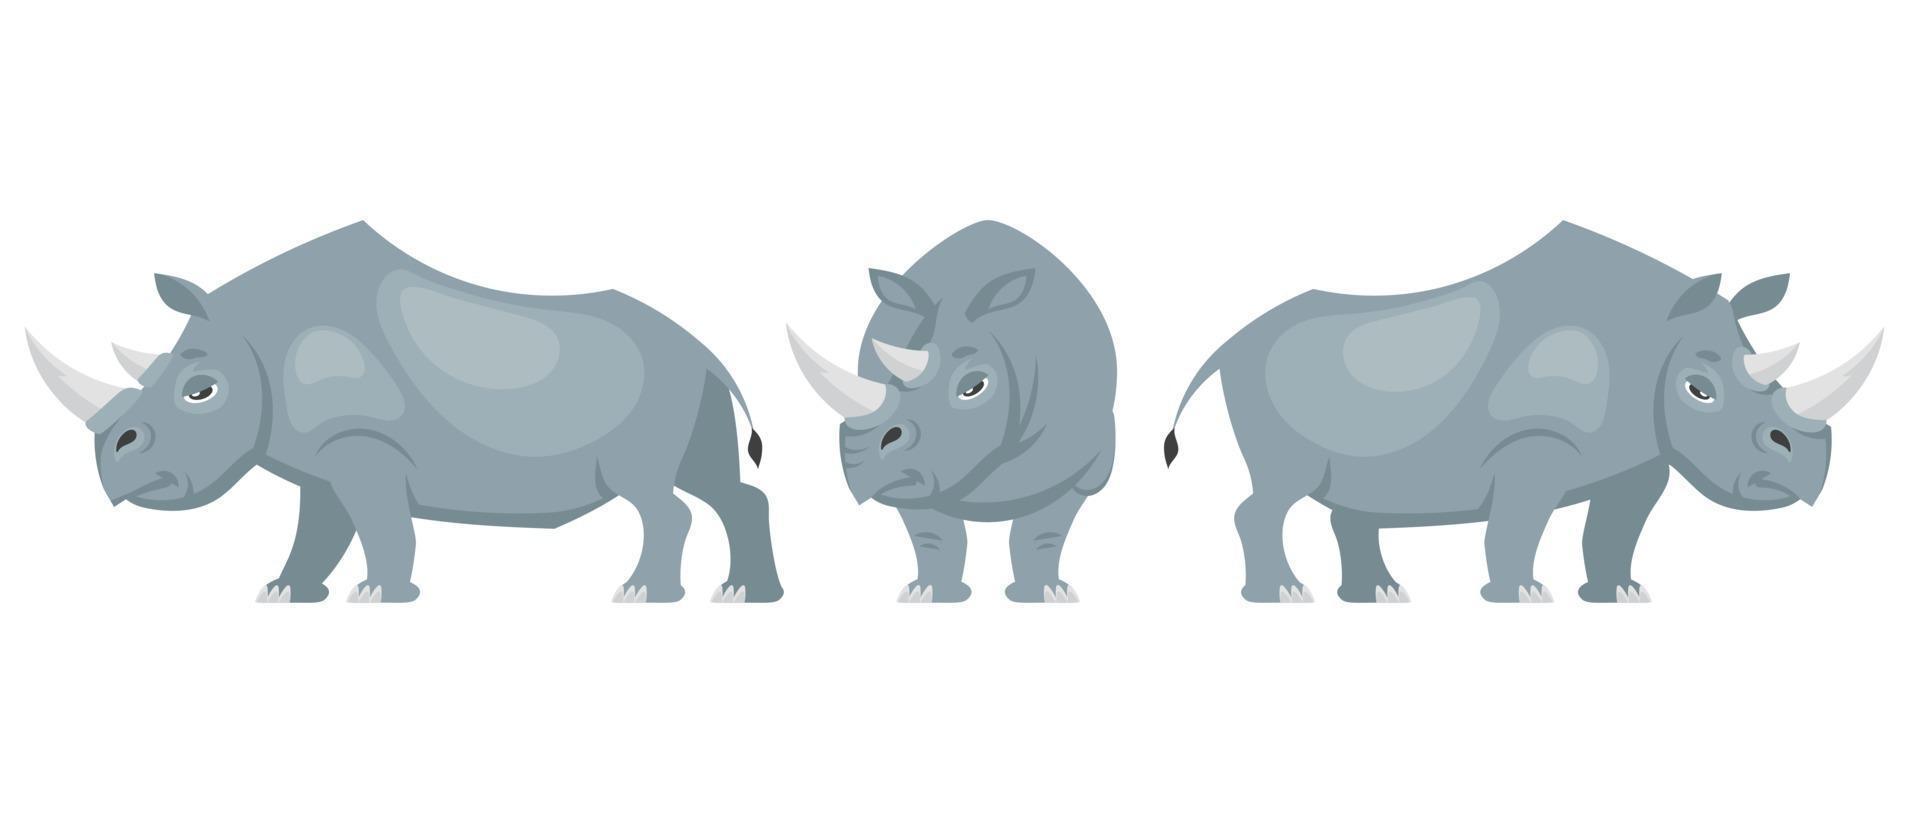 rhinocéros dans différentes poses. vecteur